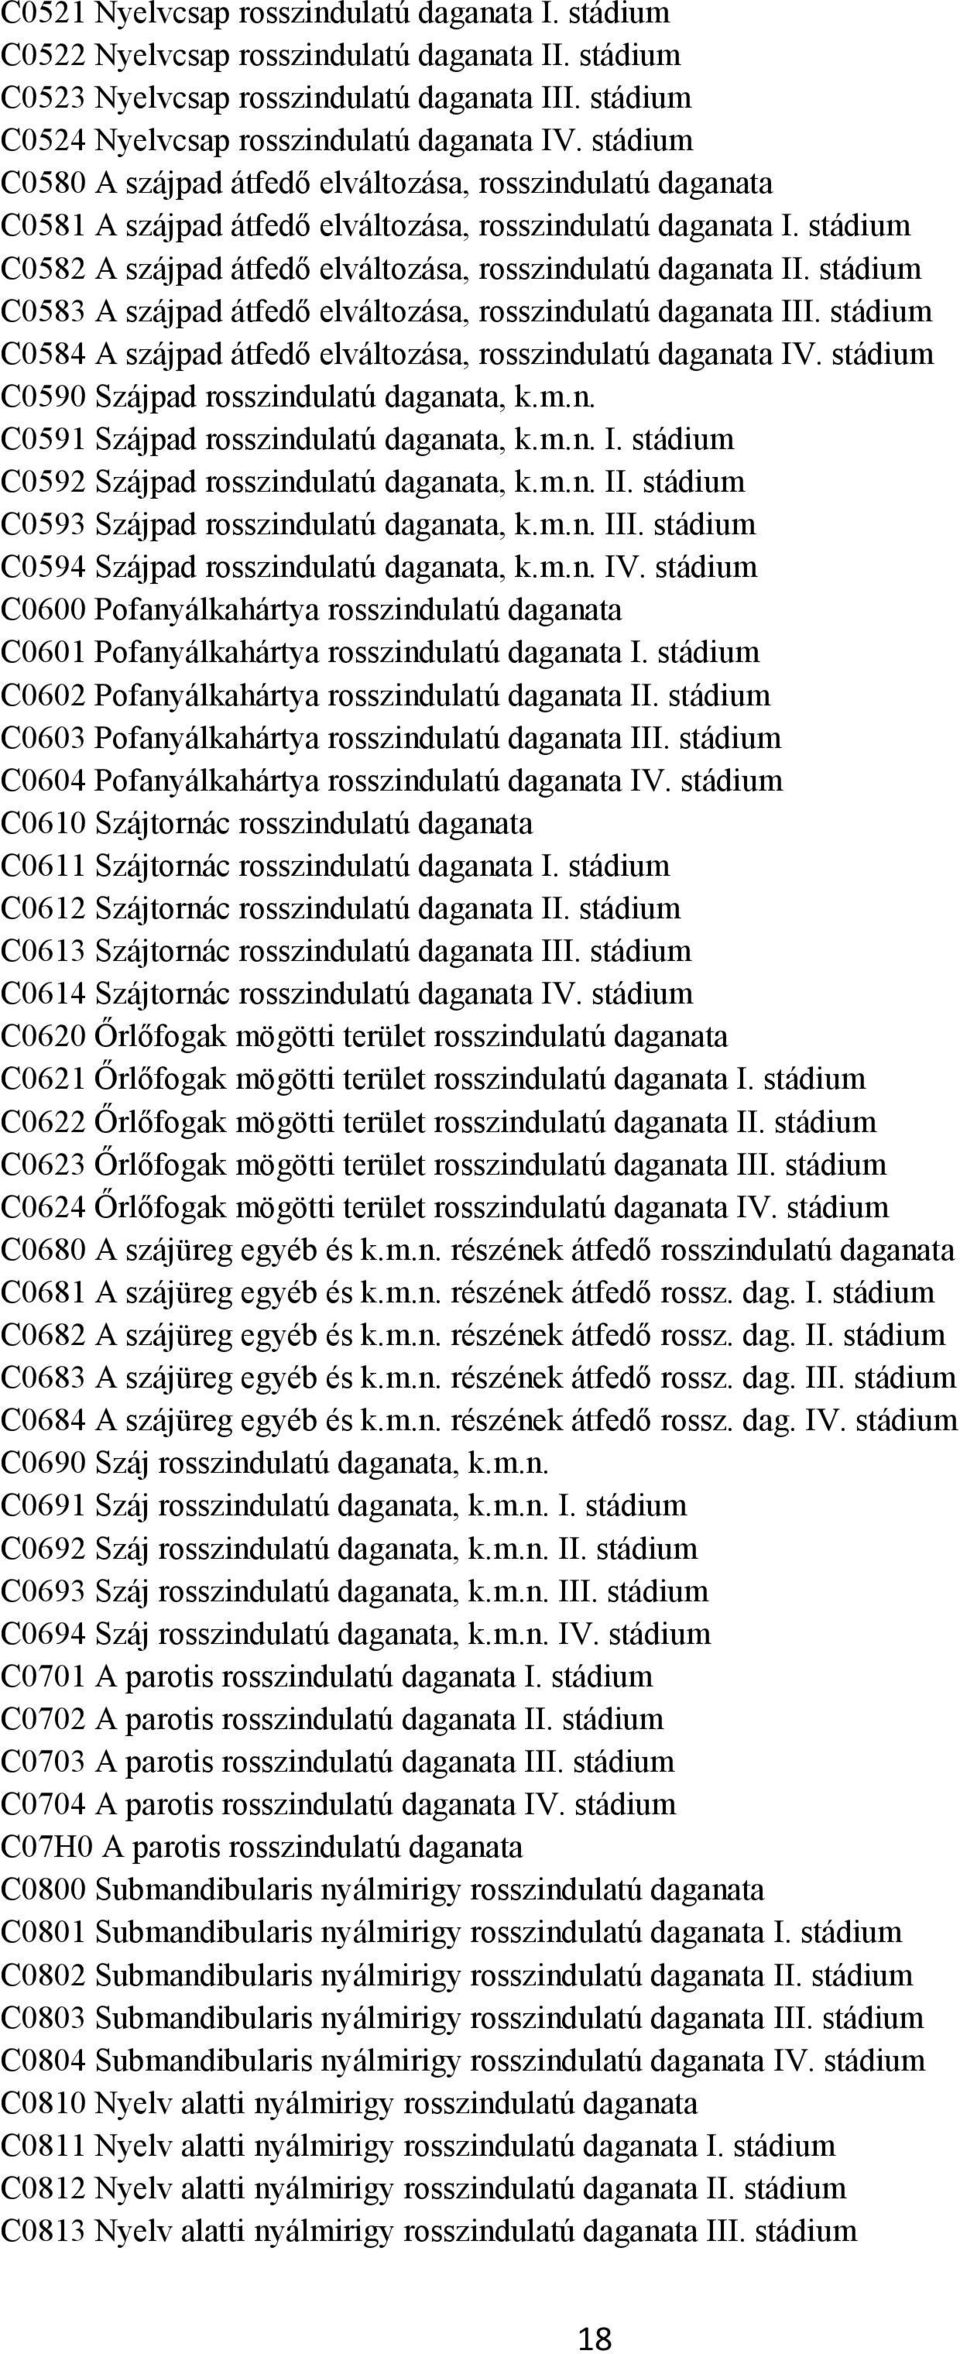 stádium C0583 A szájpad átfedő elváltozása, rosszindulatú daganata III. stádium C0584 A szájpad átfedő elváltozása, rosszindulatú daganata IV. stádium C0590 Szájpad rosszindulatú daganata, k.m.n. C0591 Szájpad rosszindulatú daganata, k.